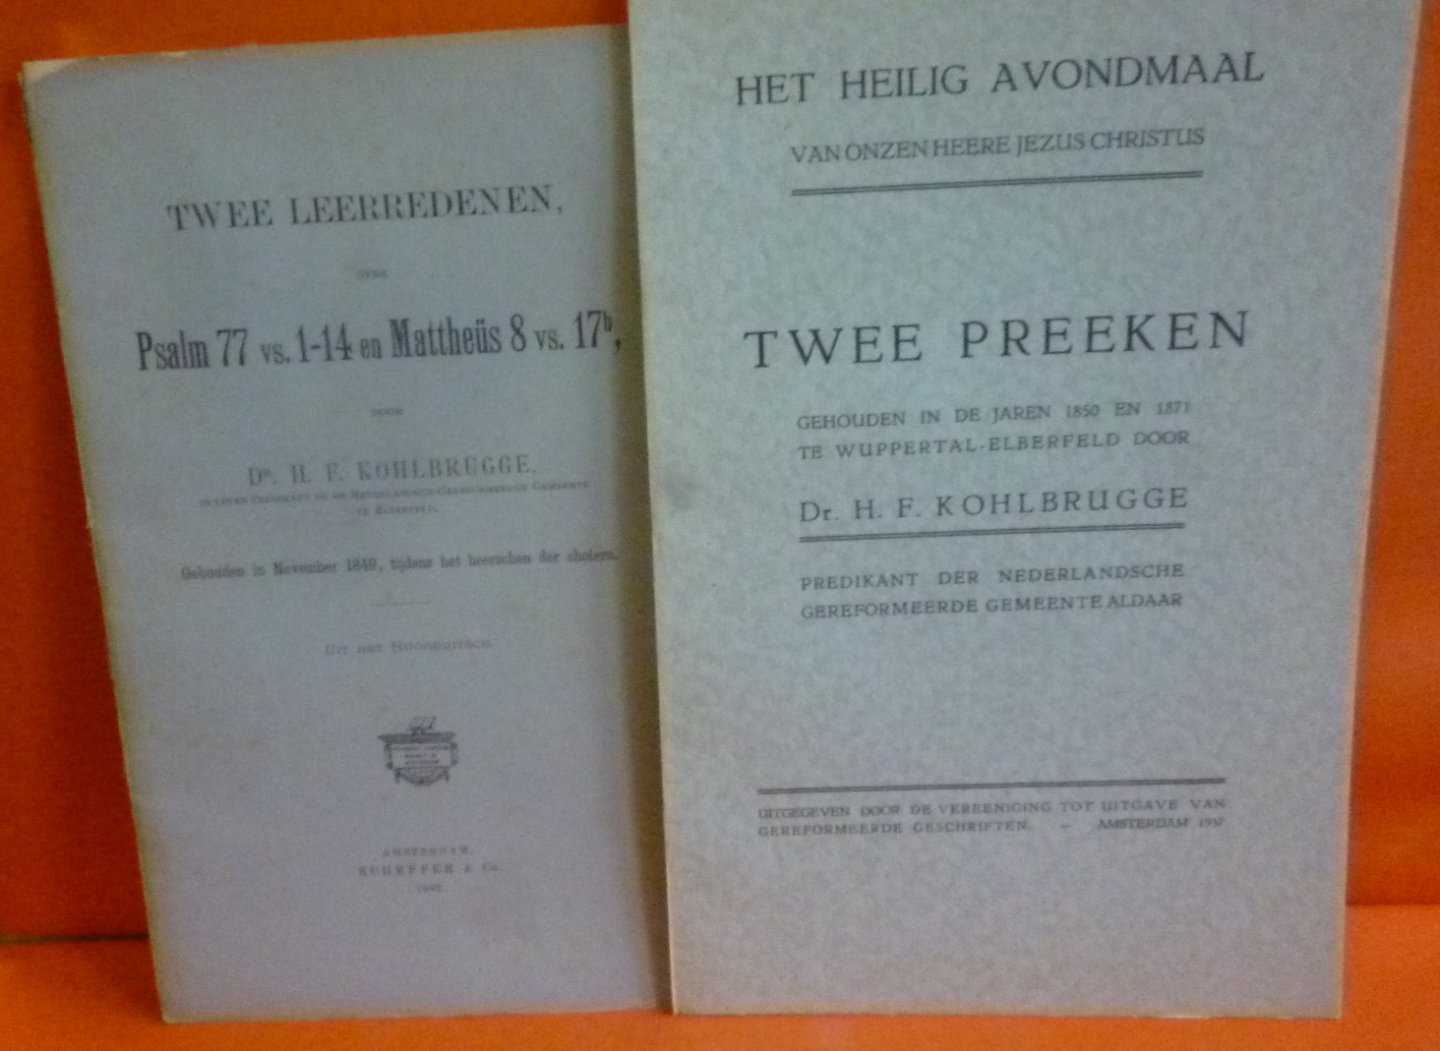 Dr. H.F. Kohlbrugge - Twee preeken gehouden in de jaren 1850 en 1871 + Twee leerredenen, over Psalm 77 vs. 1-14 en Mattheus 8 vs.17b